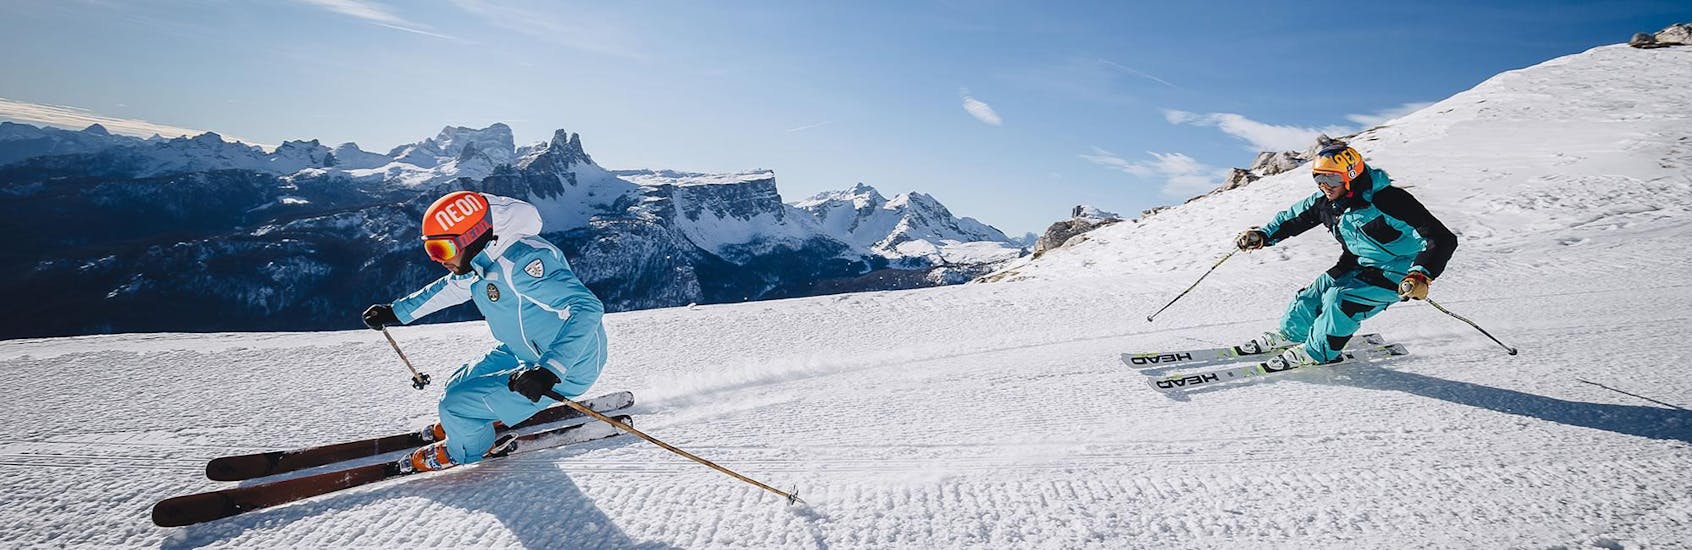 Un monitor de esquí abre el camino por una pista de esquí en la estación de Cortina d'Ampezzo, durante una de las clases particulares de esquí para adultos - Principiantes, organizadas por la escuela de esquí Scuola di Sci e Snowboard Cristallo Cortina.